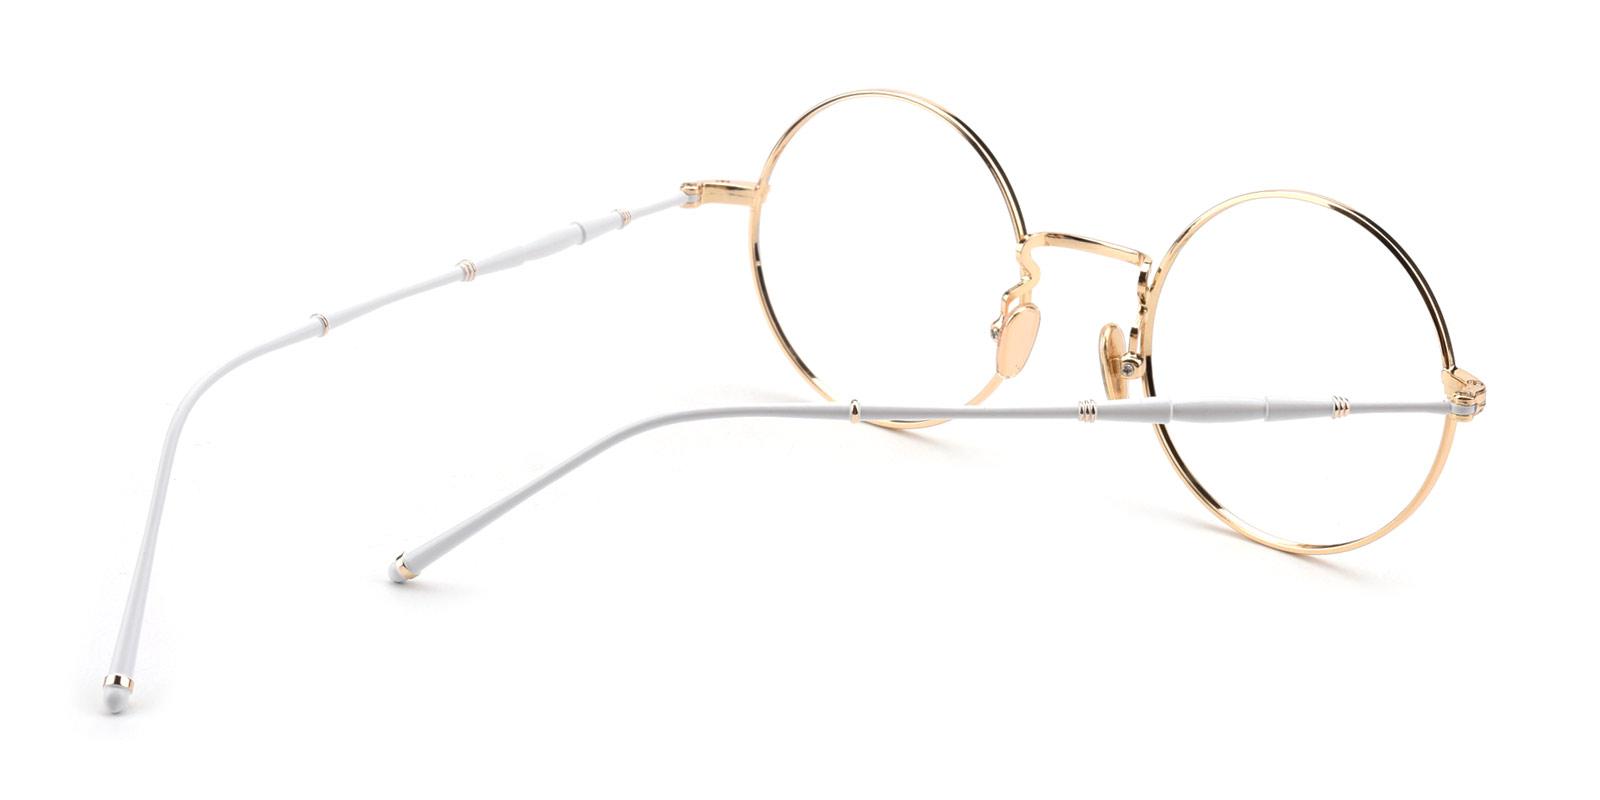 Toto-White-Round-Metal-Eyeglasses-detail